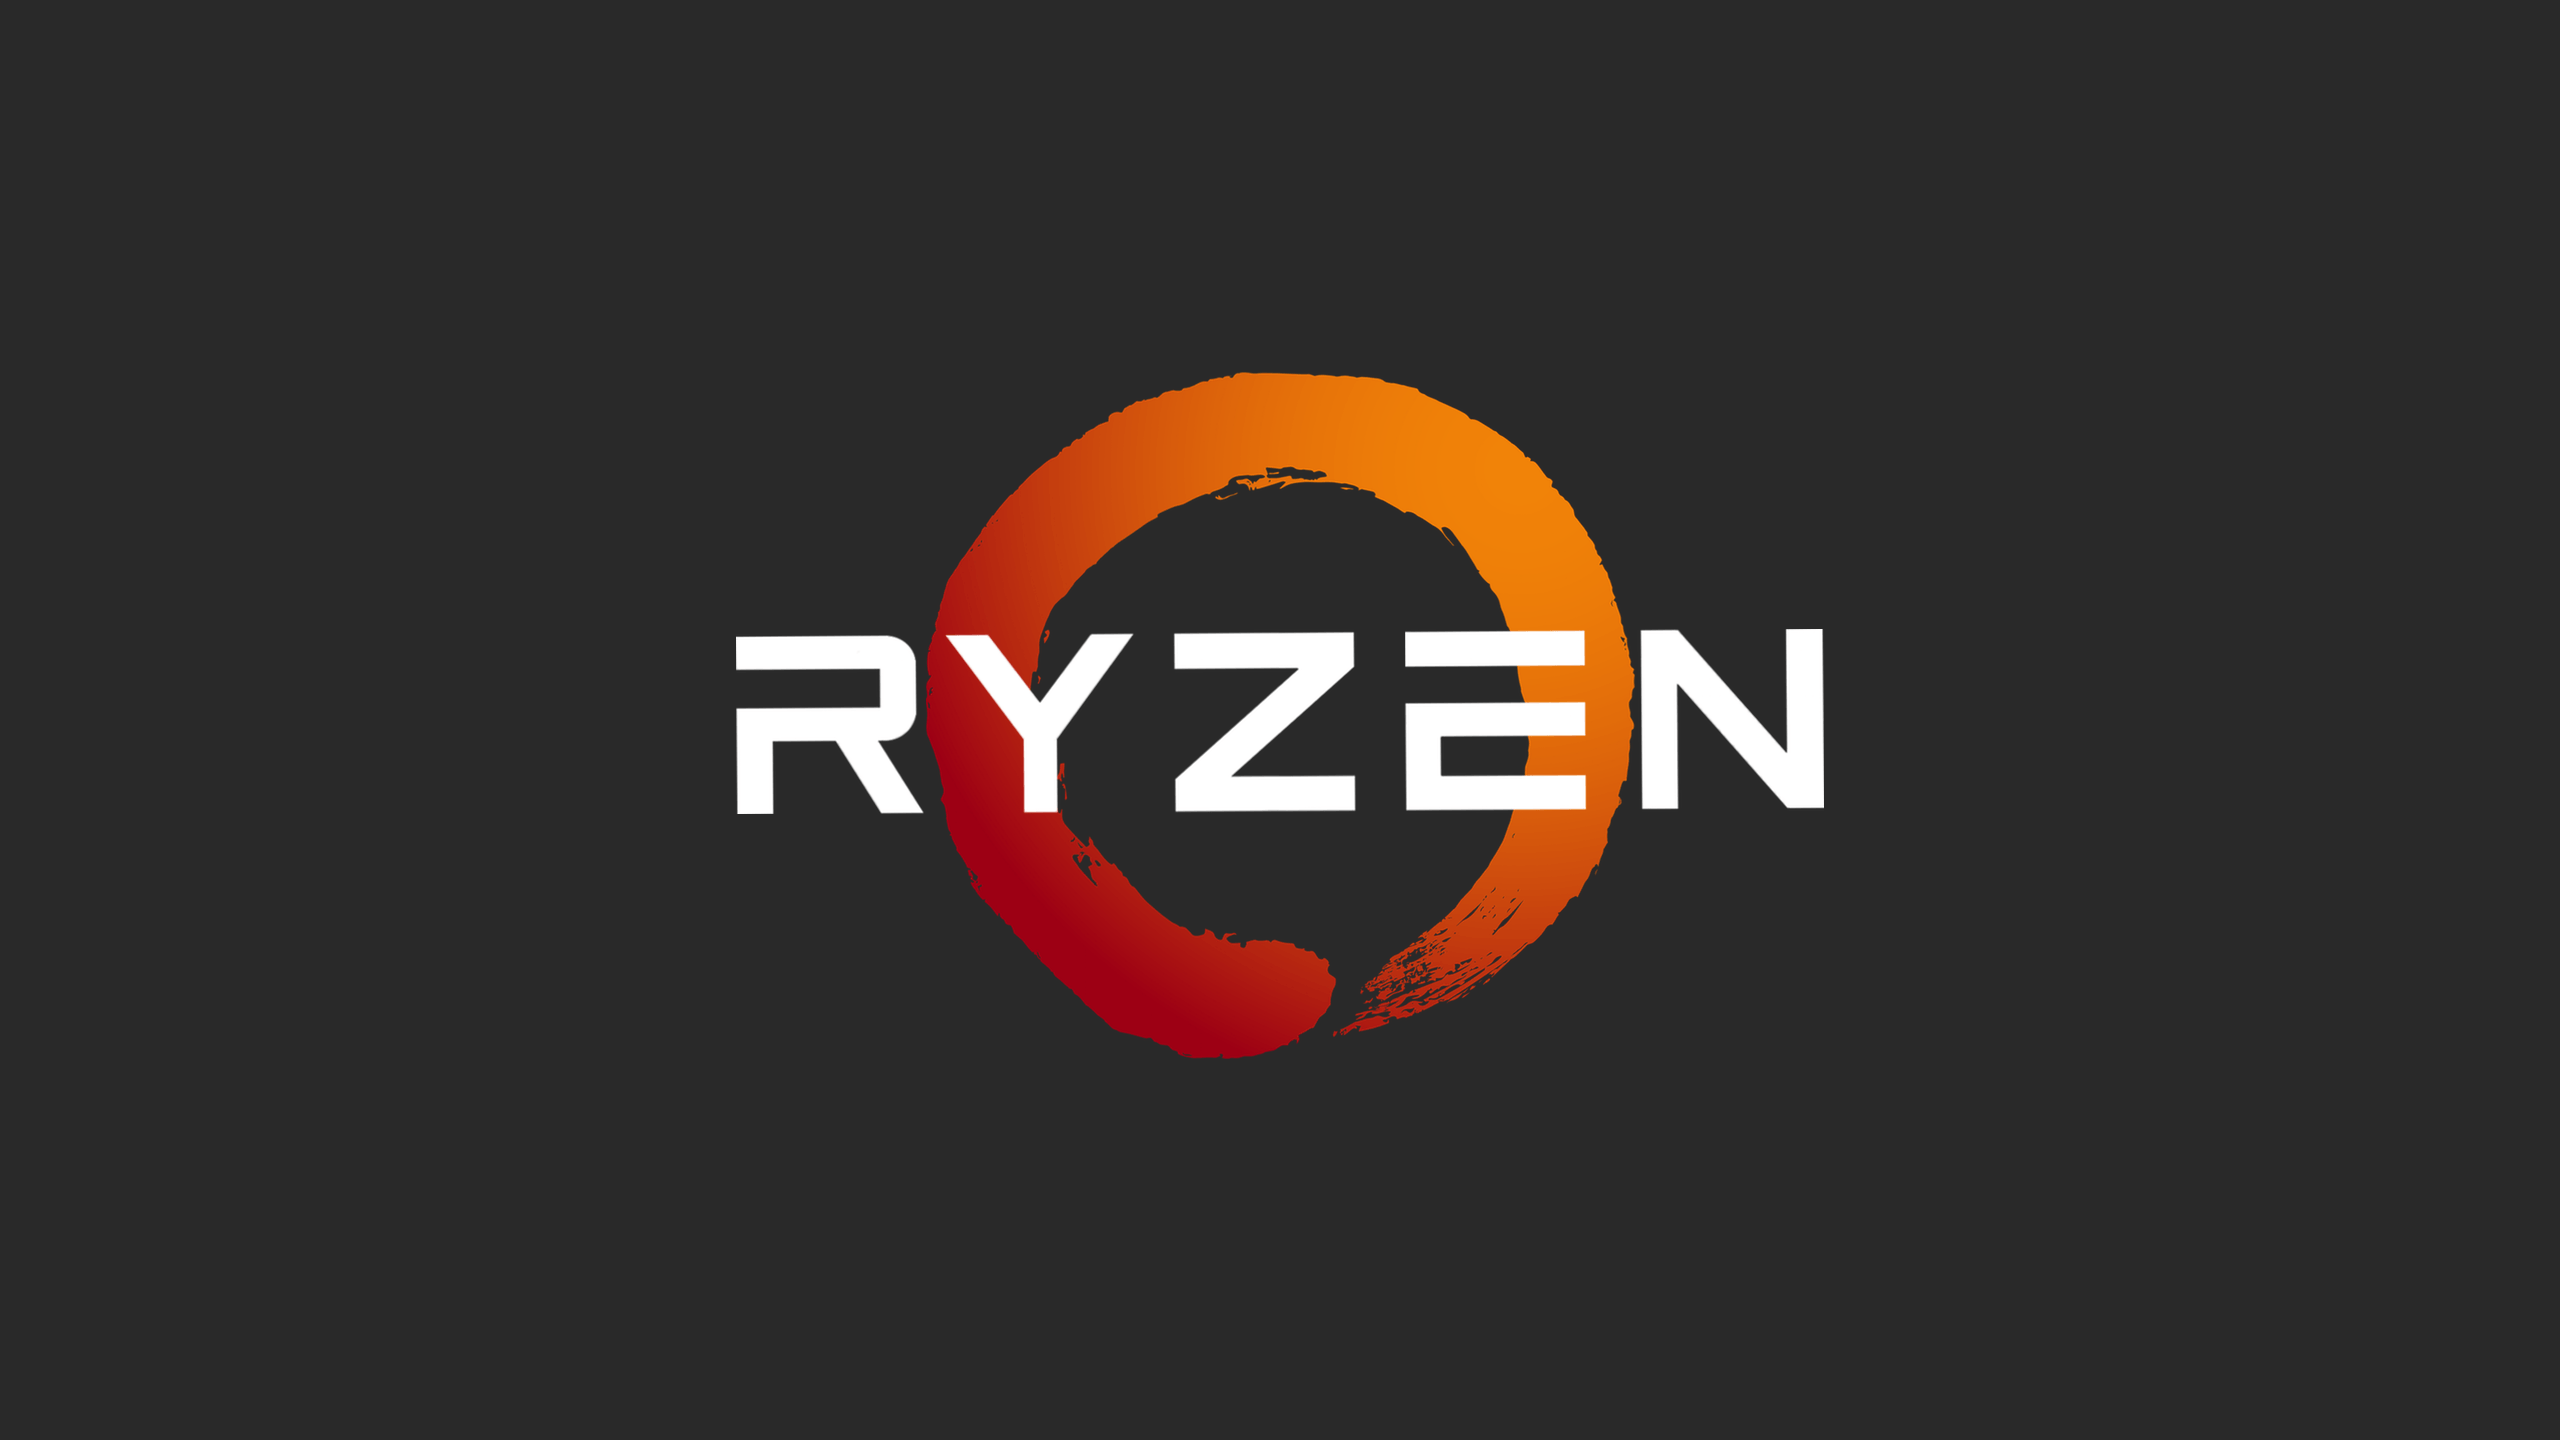 AMD Ryzen Wallpapers - Wallpaper Cave